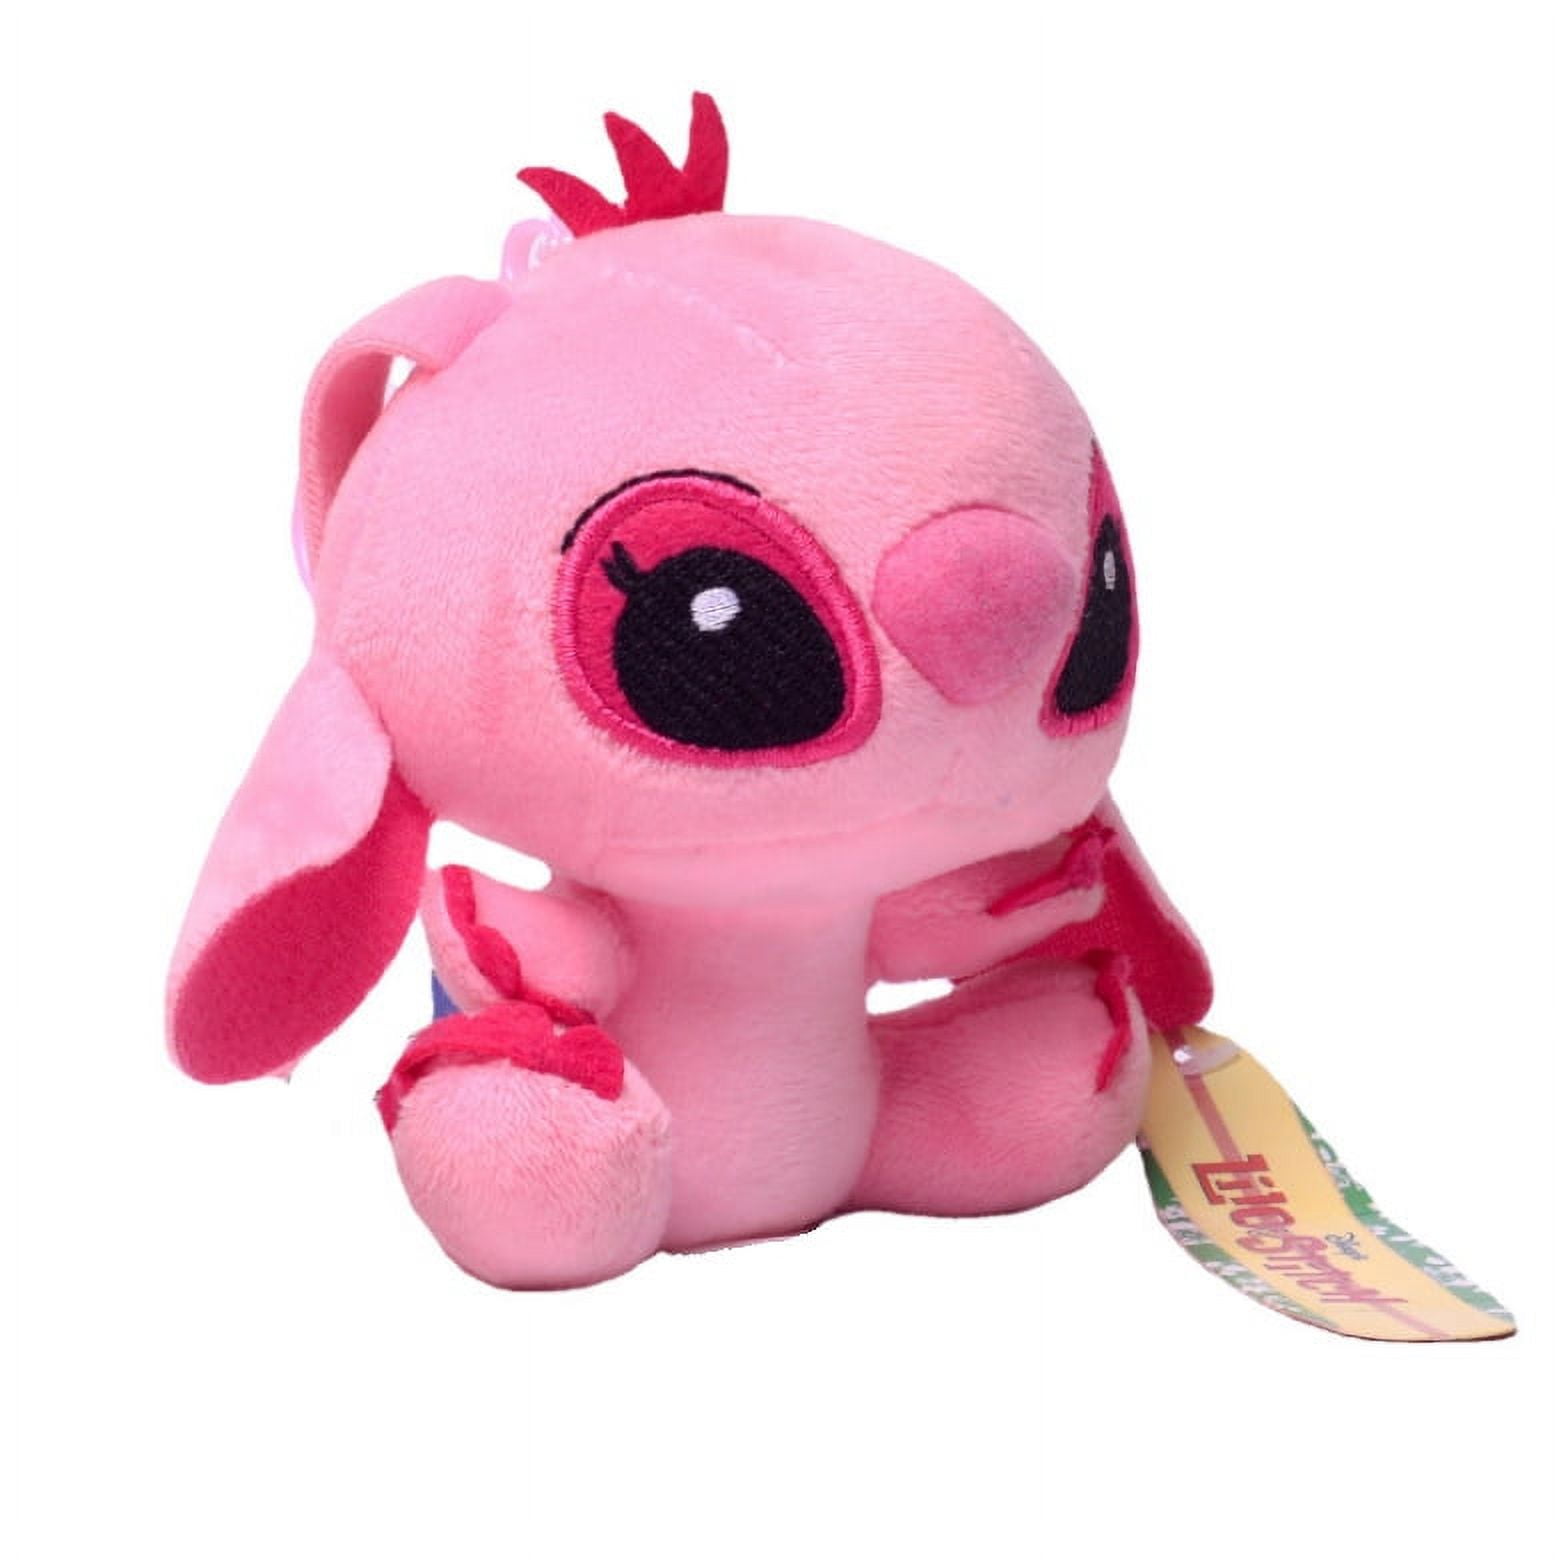 Stitch Plush Toys, 3.9 inch Pink Lilo & Stitch Stuffed Dolls, Pink Stitch Gifts, Soft and Huggable, Stuffed Pillow Buddy, Stitch Gifts for Fans